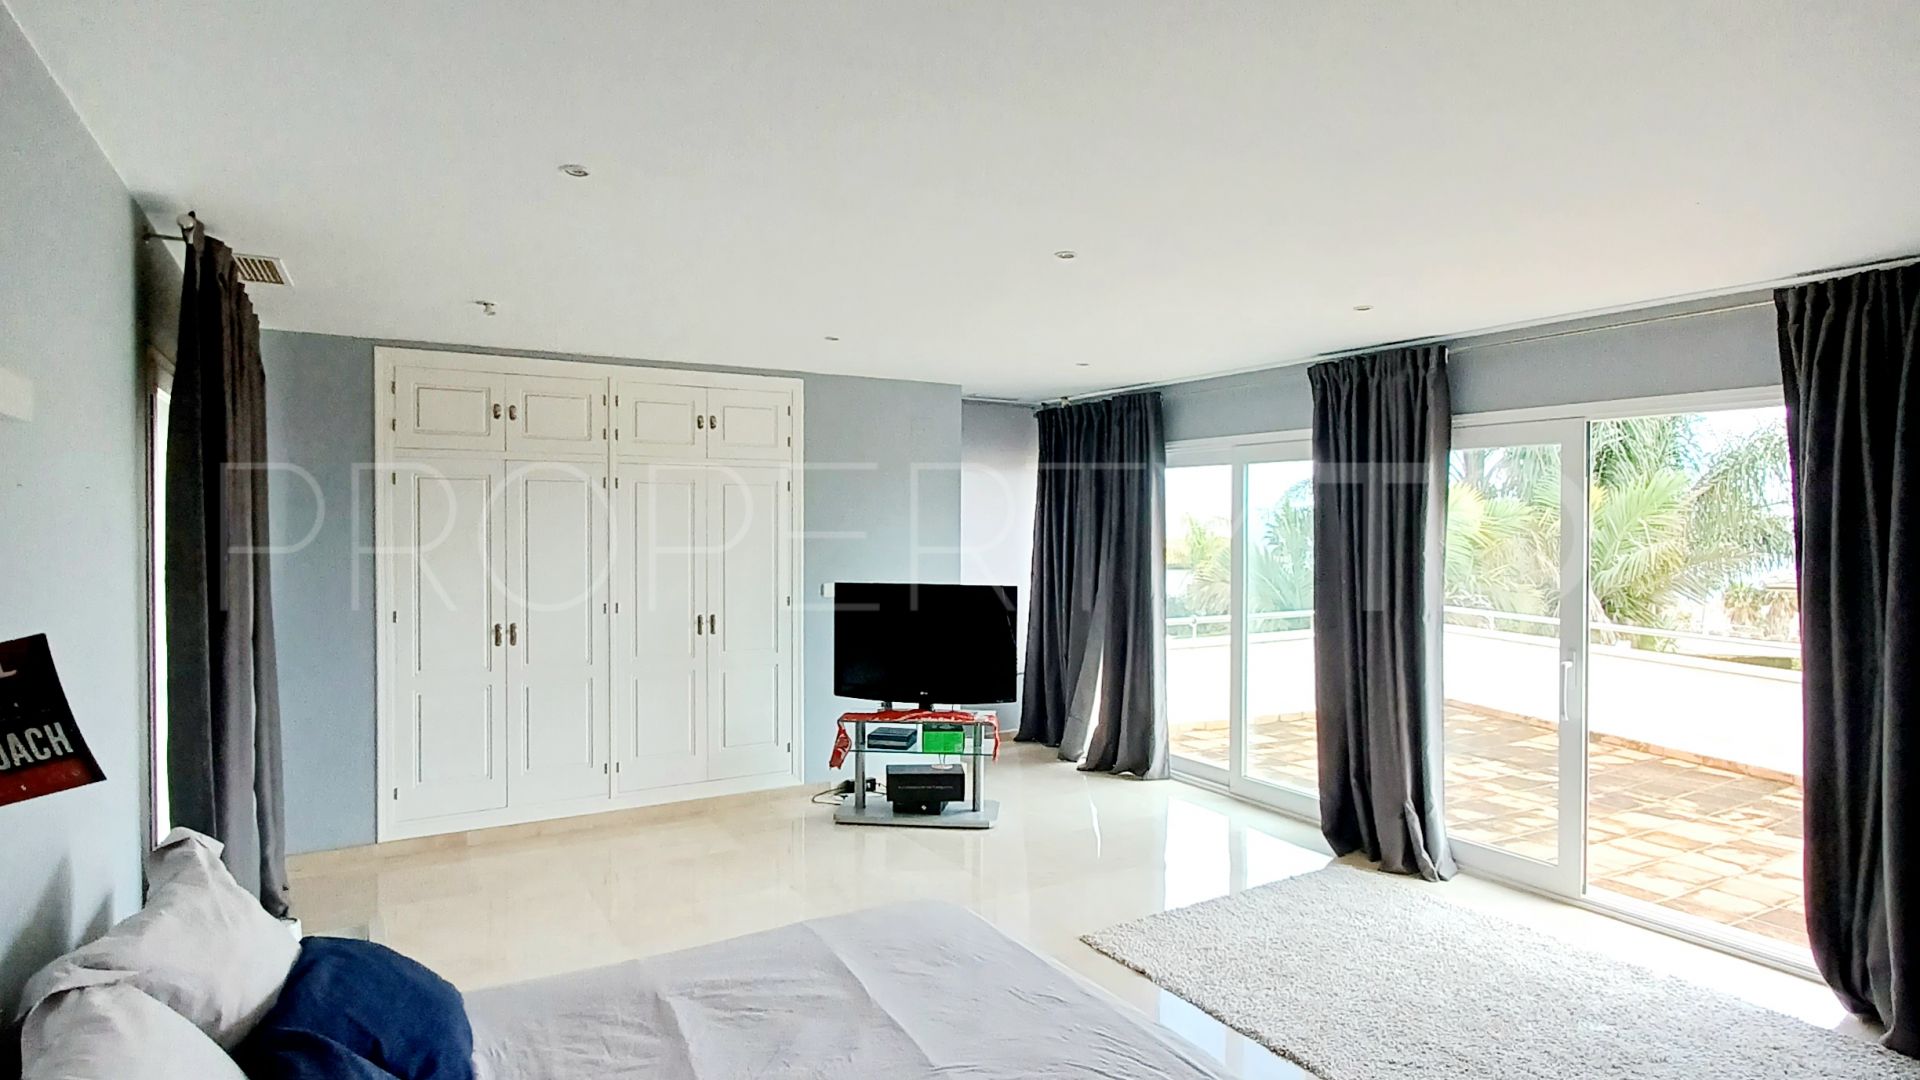 5 bedrooms villa in Alcaidesa Costa for sale